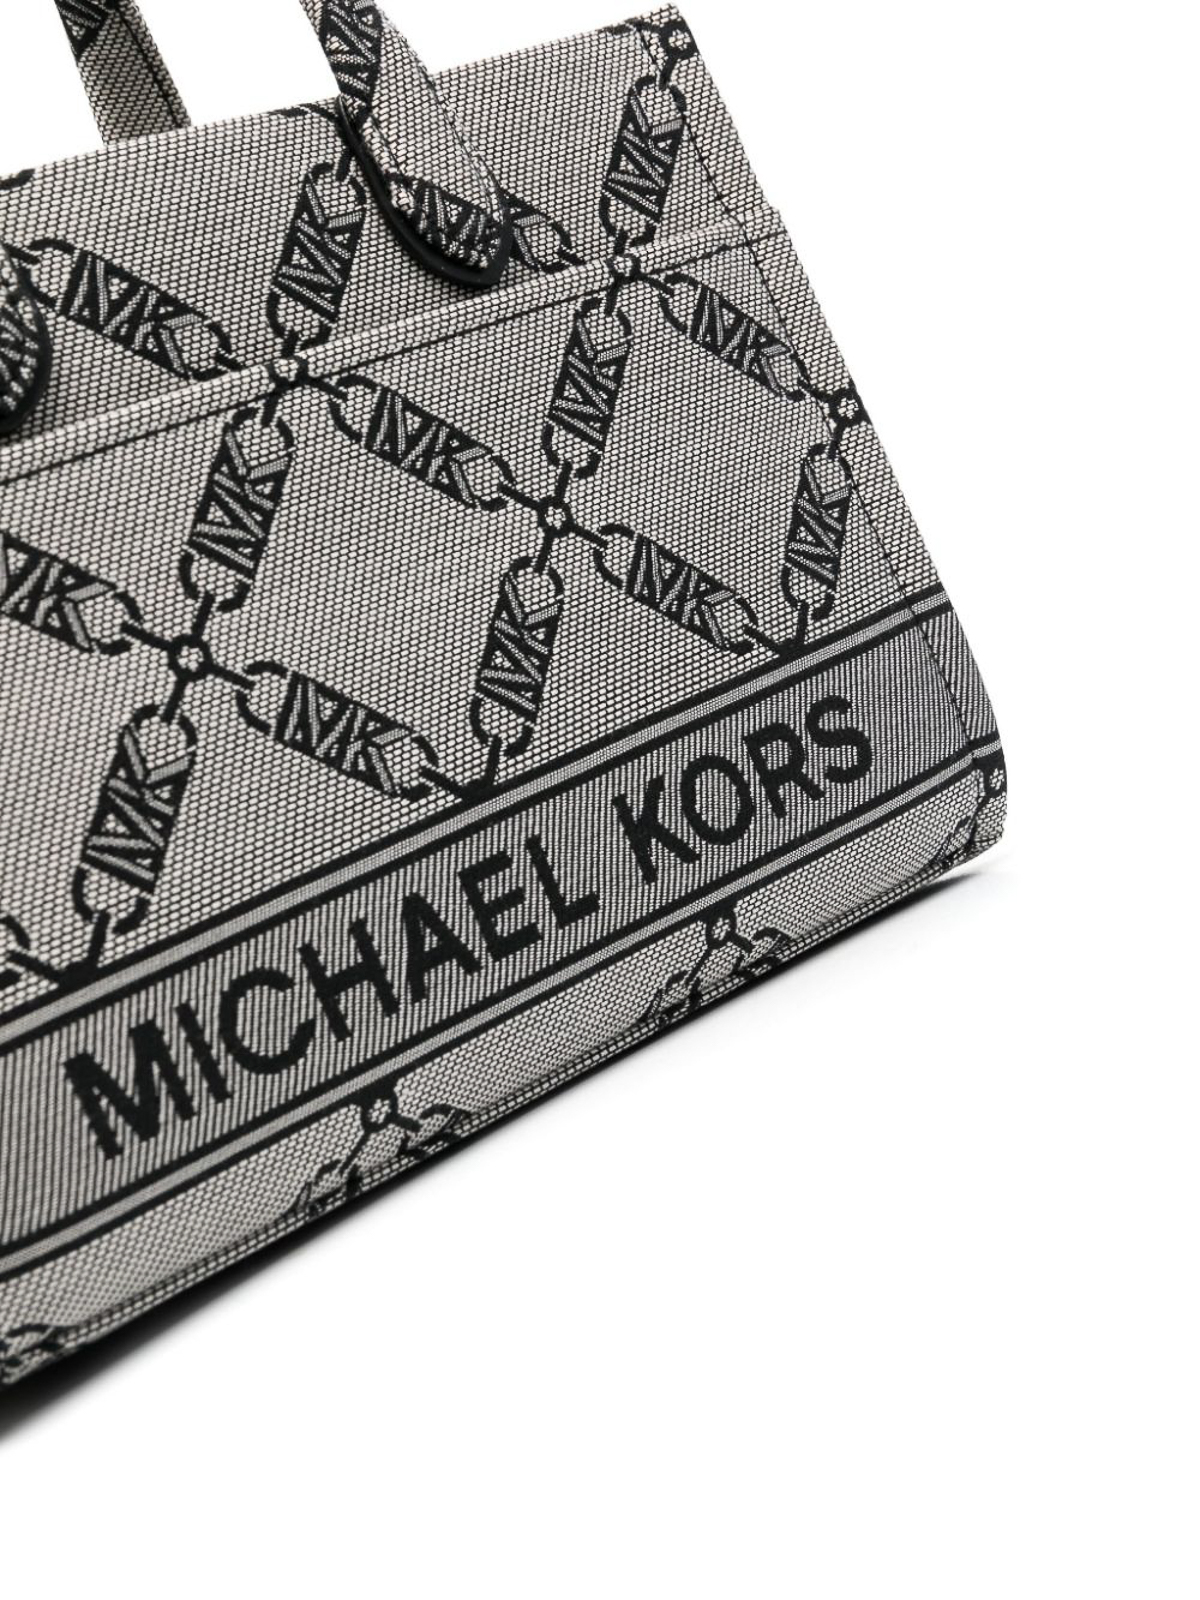 MICHAEL Michael Kors Monogram Print Tote in White